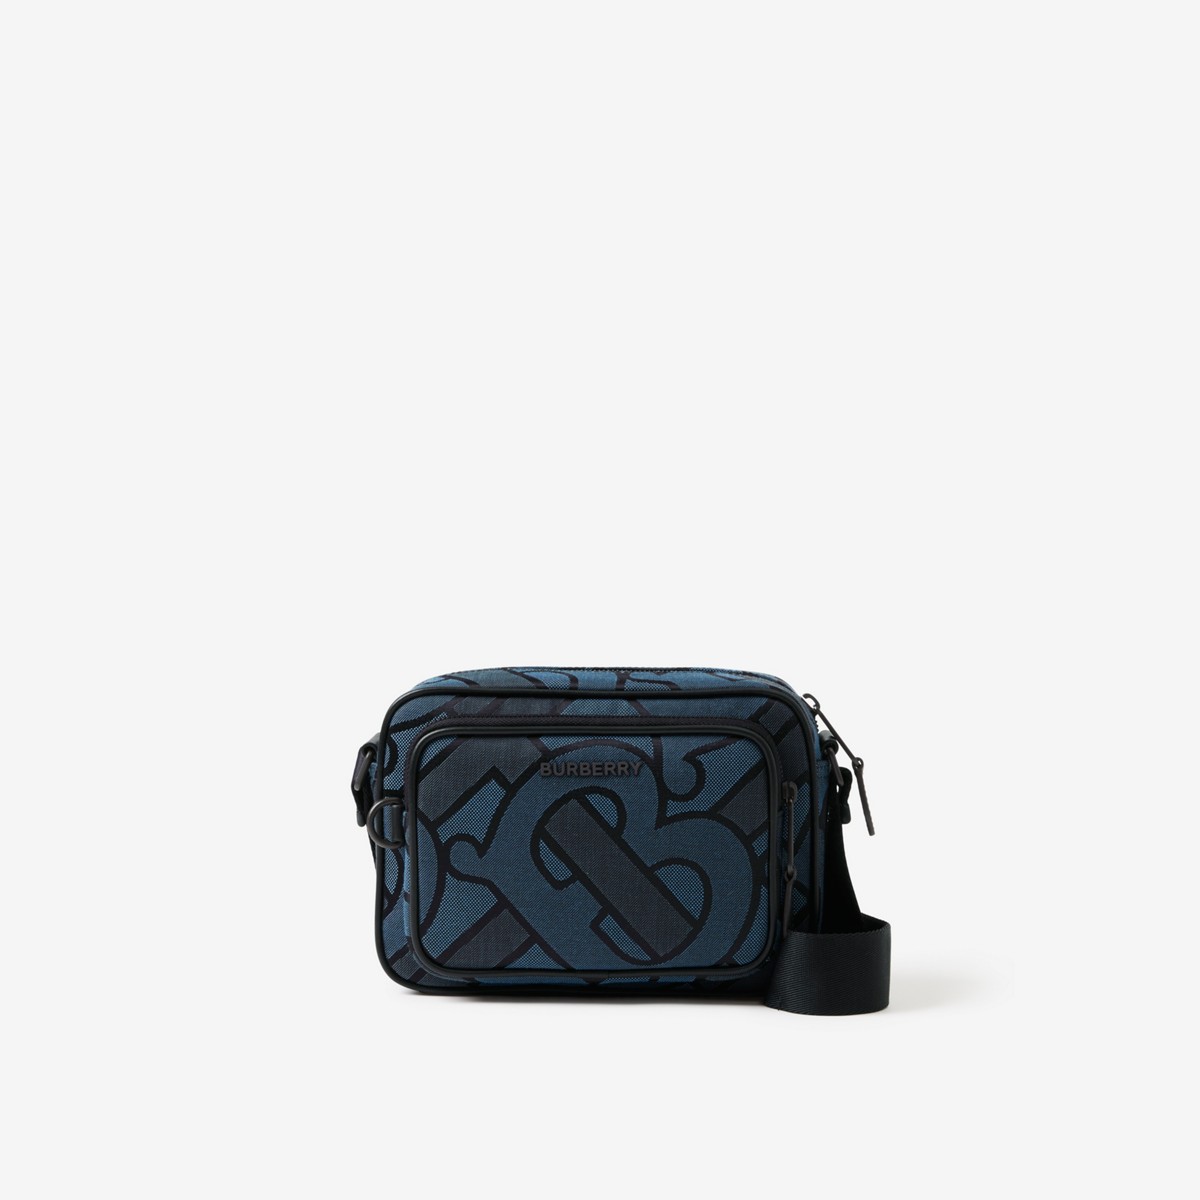 Burberry Monogram Bag | ModeSens